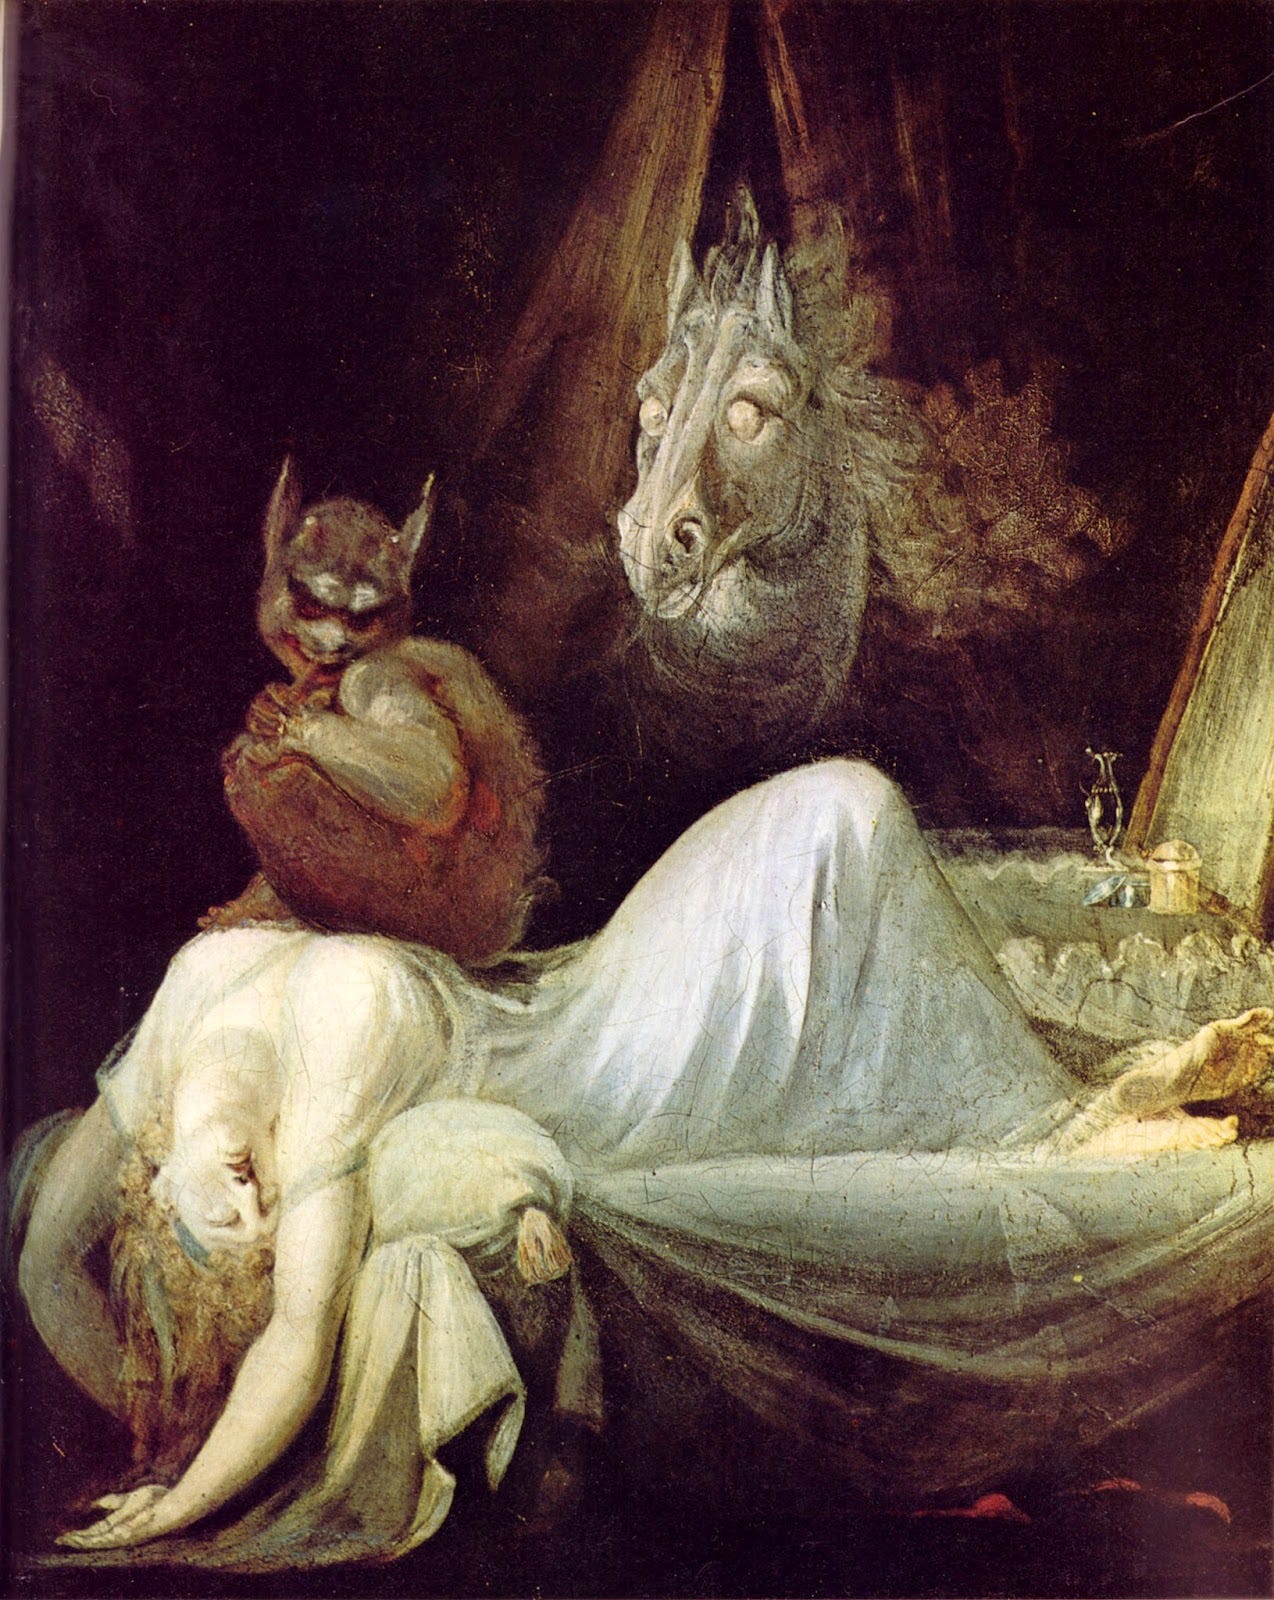 Dipinto a olio realistico. Una donna bionda con una camicia da notte bianca è distesa sul letto, con le braccia abbandonate sopra la testa. sul suo petto c'è un piccolo demone accucciato. Sullo sfondo il fantasma di un cavallo.